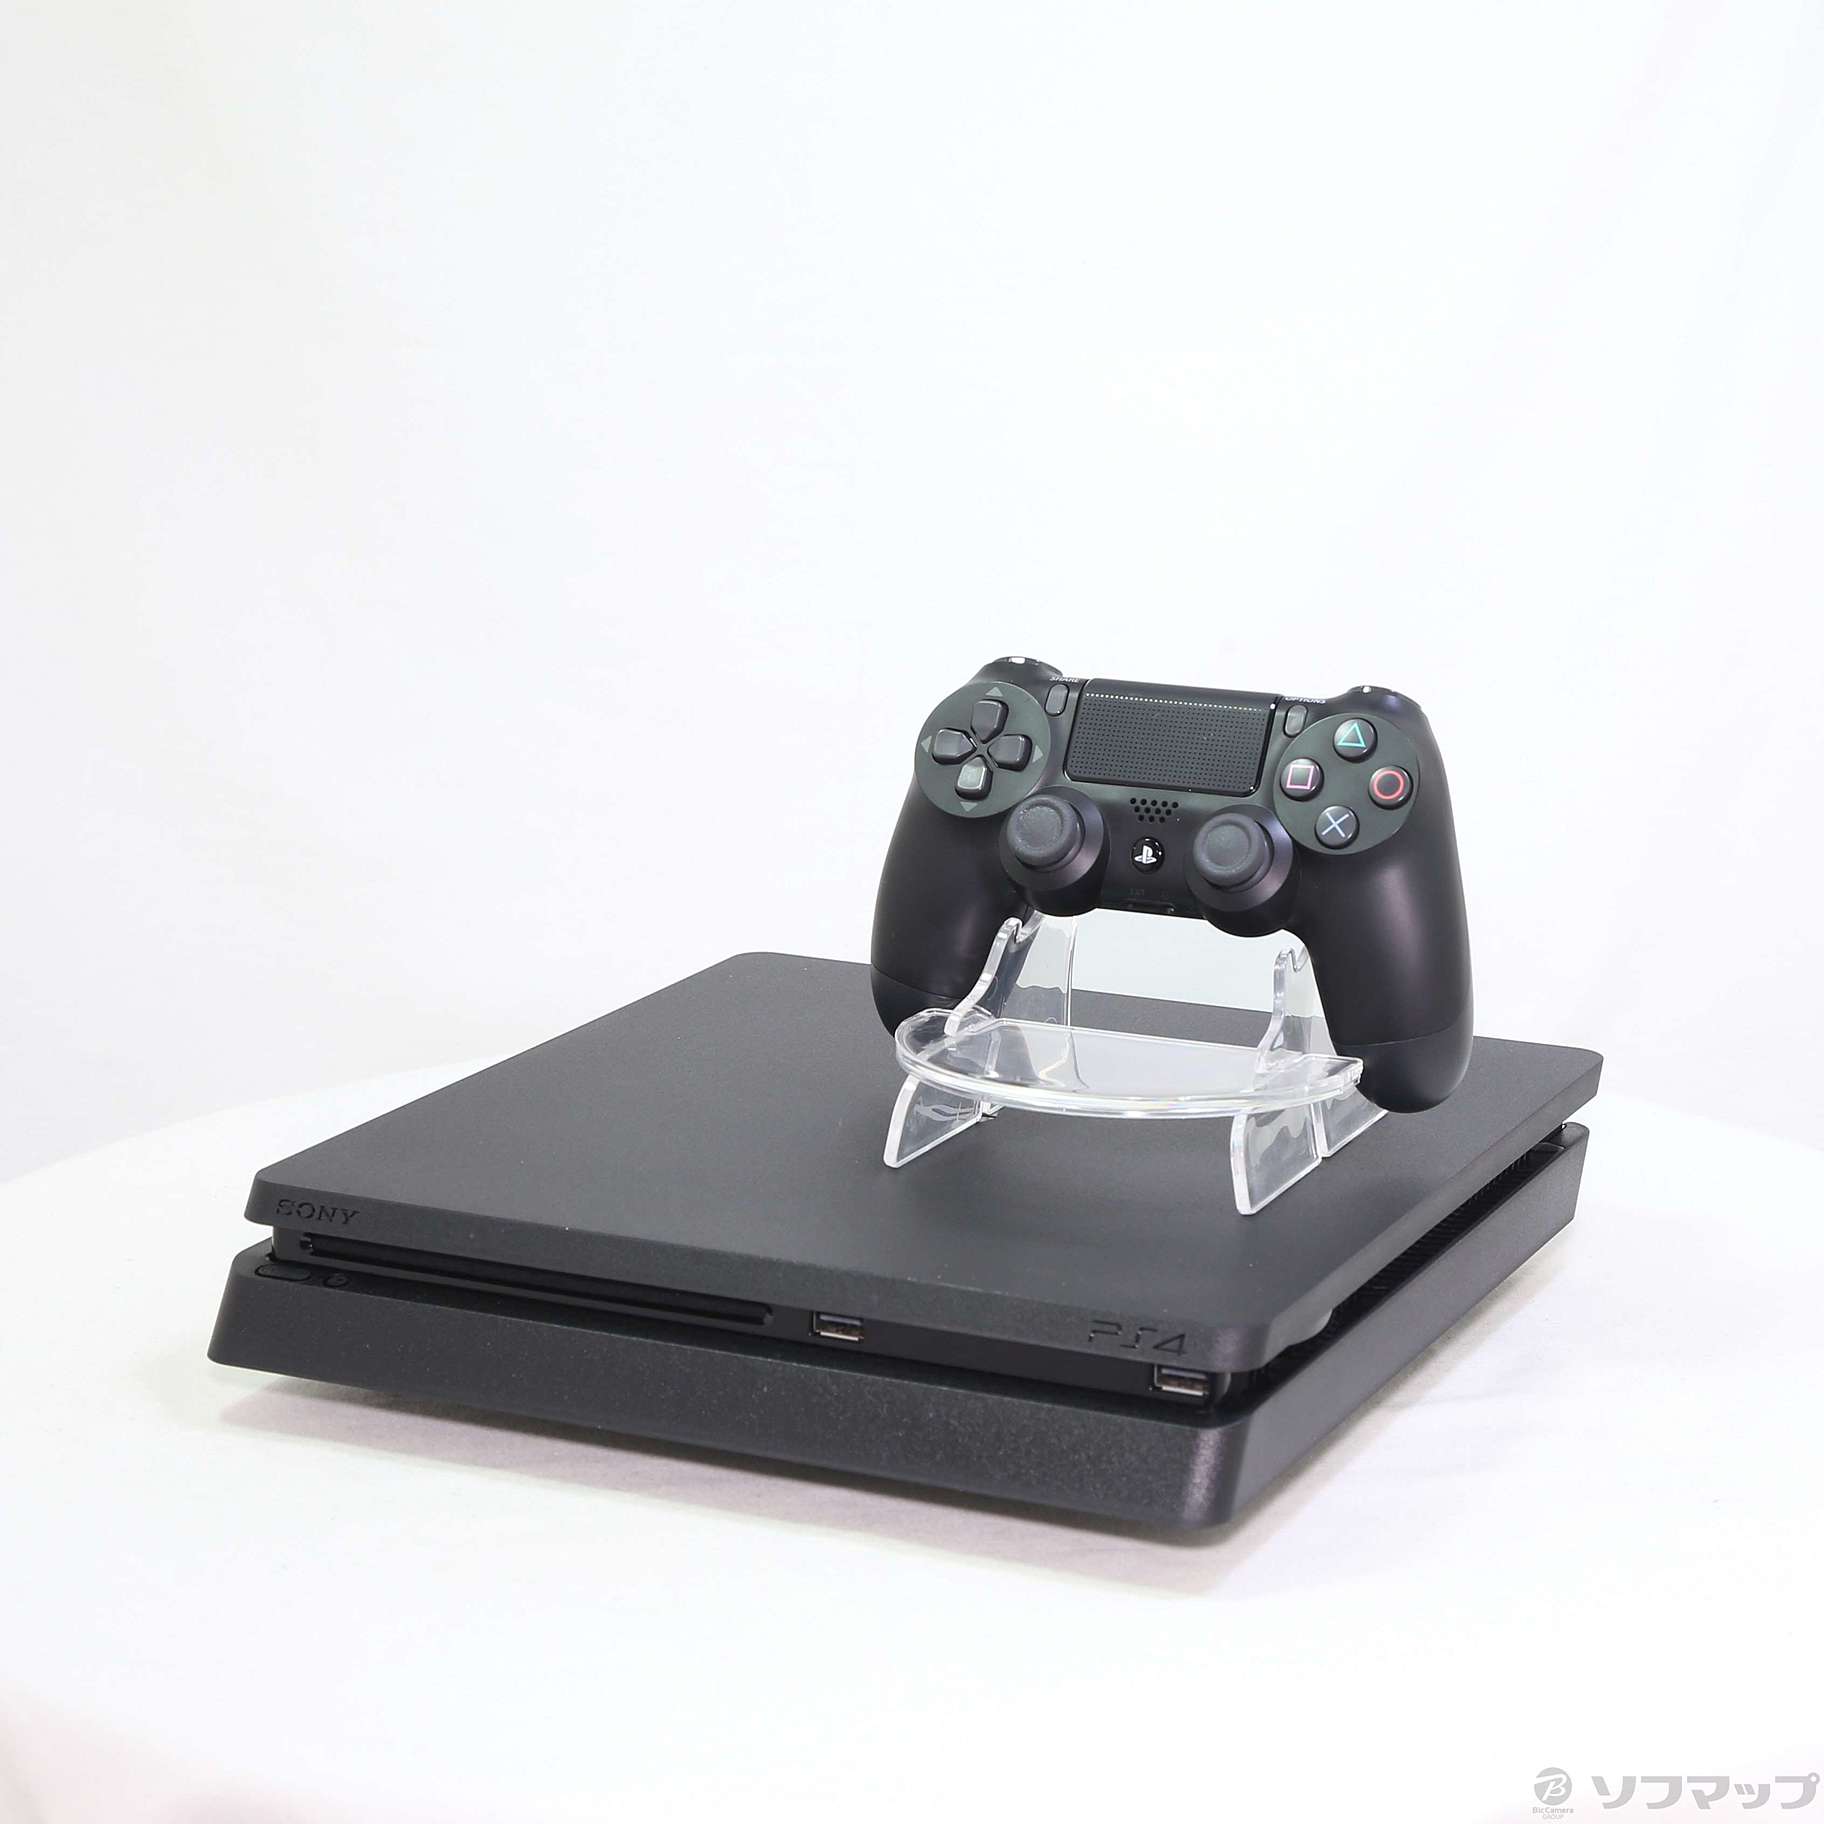 PlayStation®4 ブラック 500GB CUH-2100AB